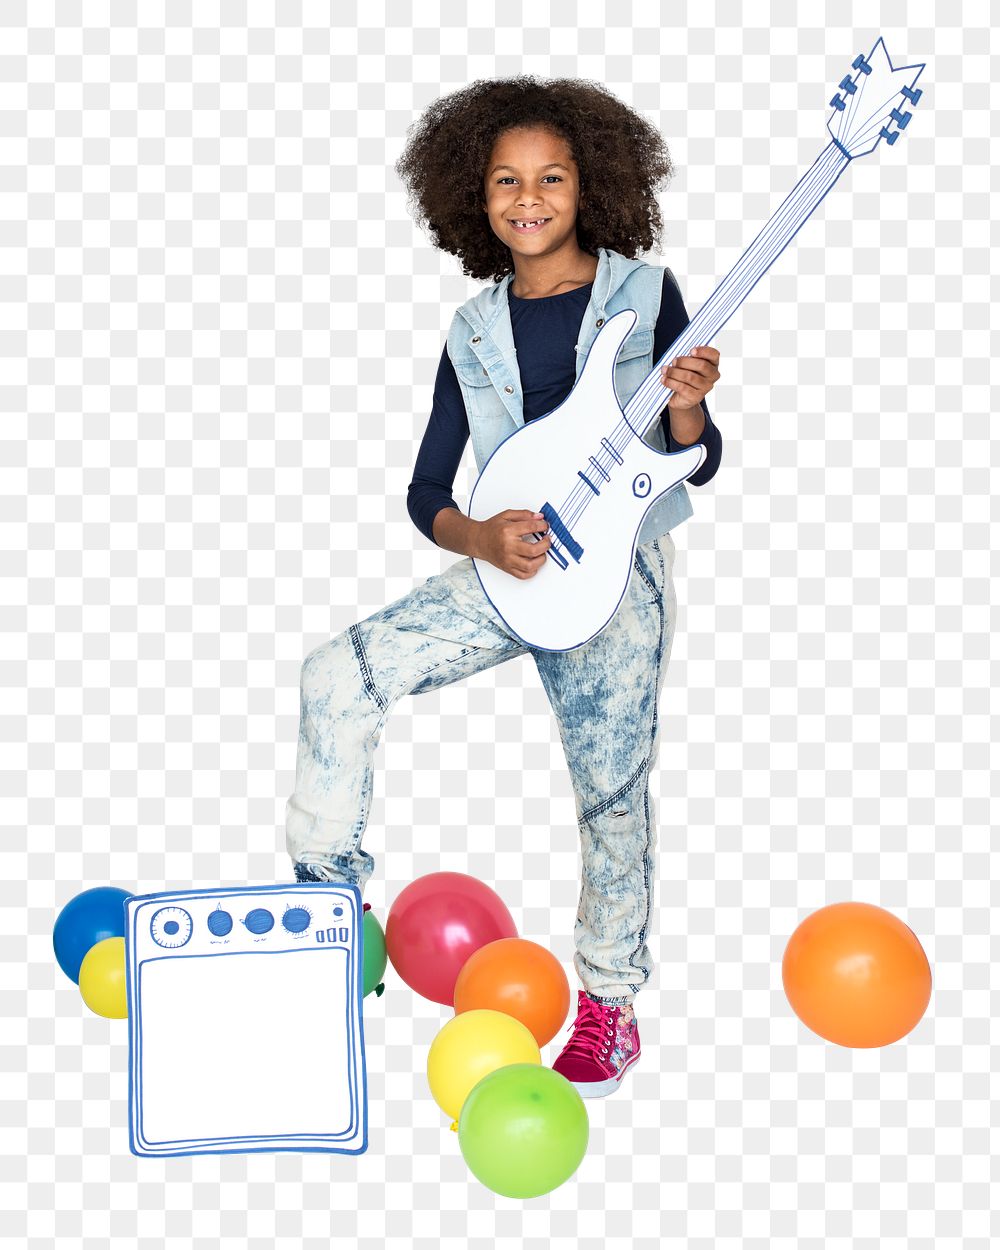 Guitar kid png, transparent background